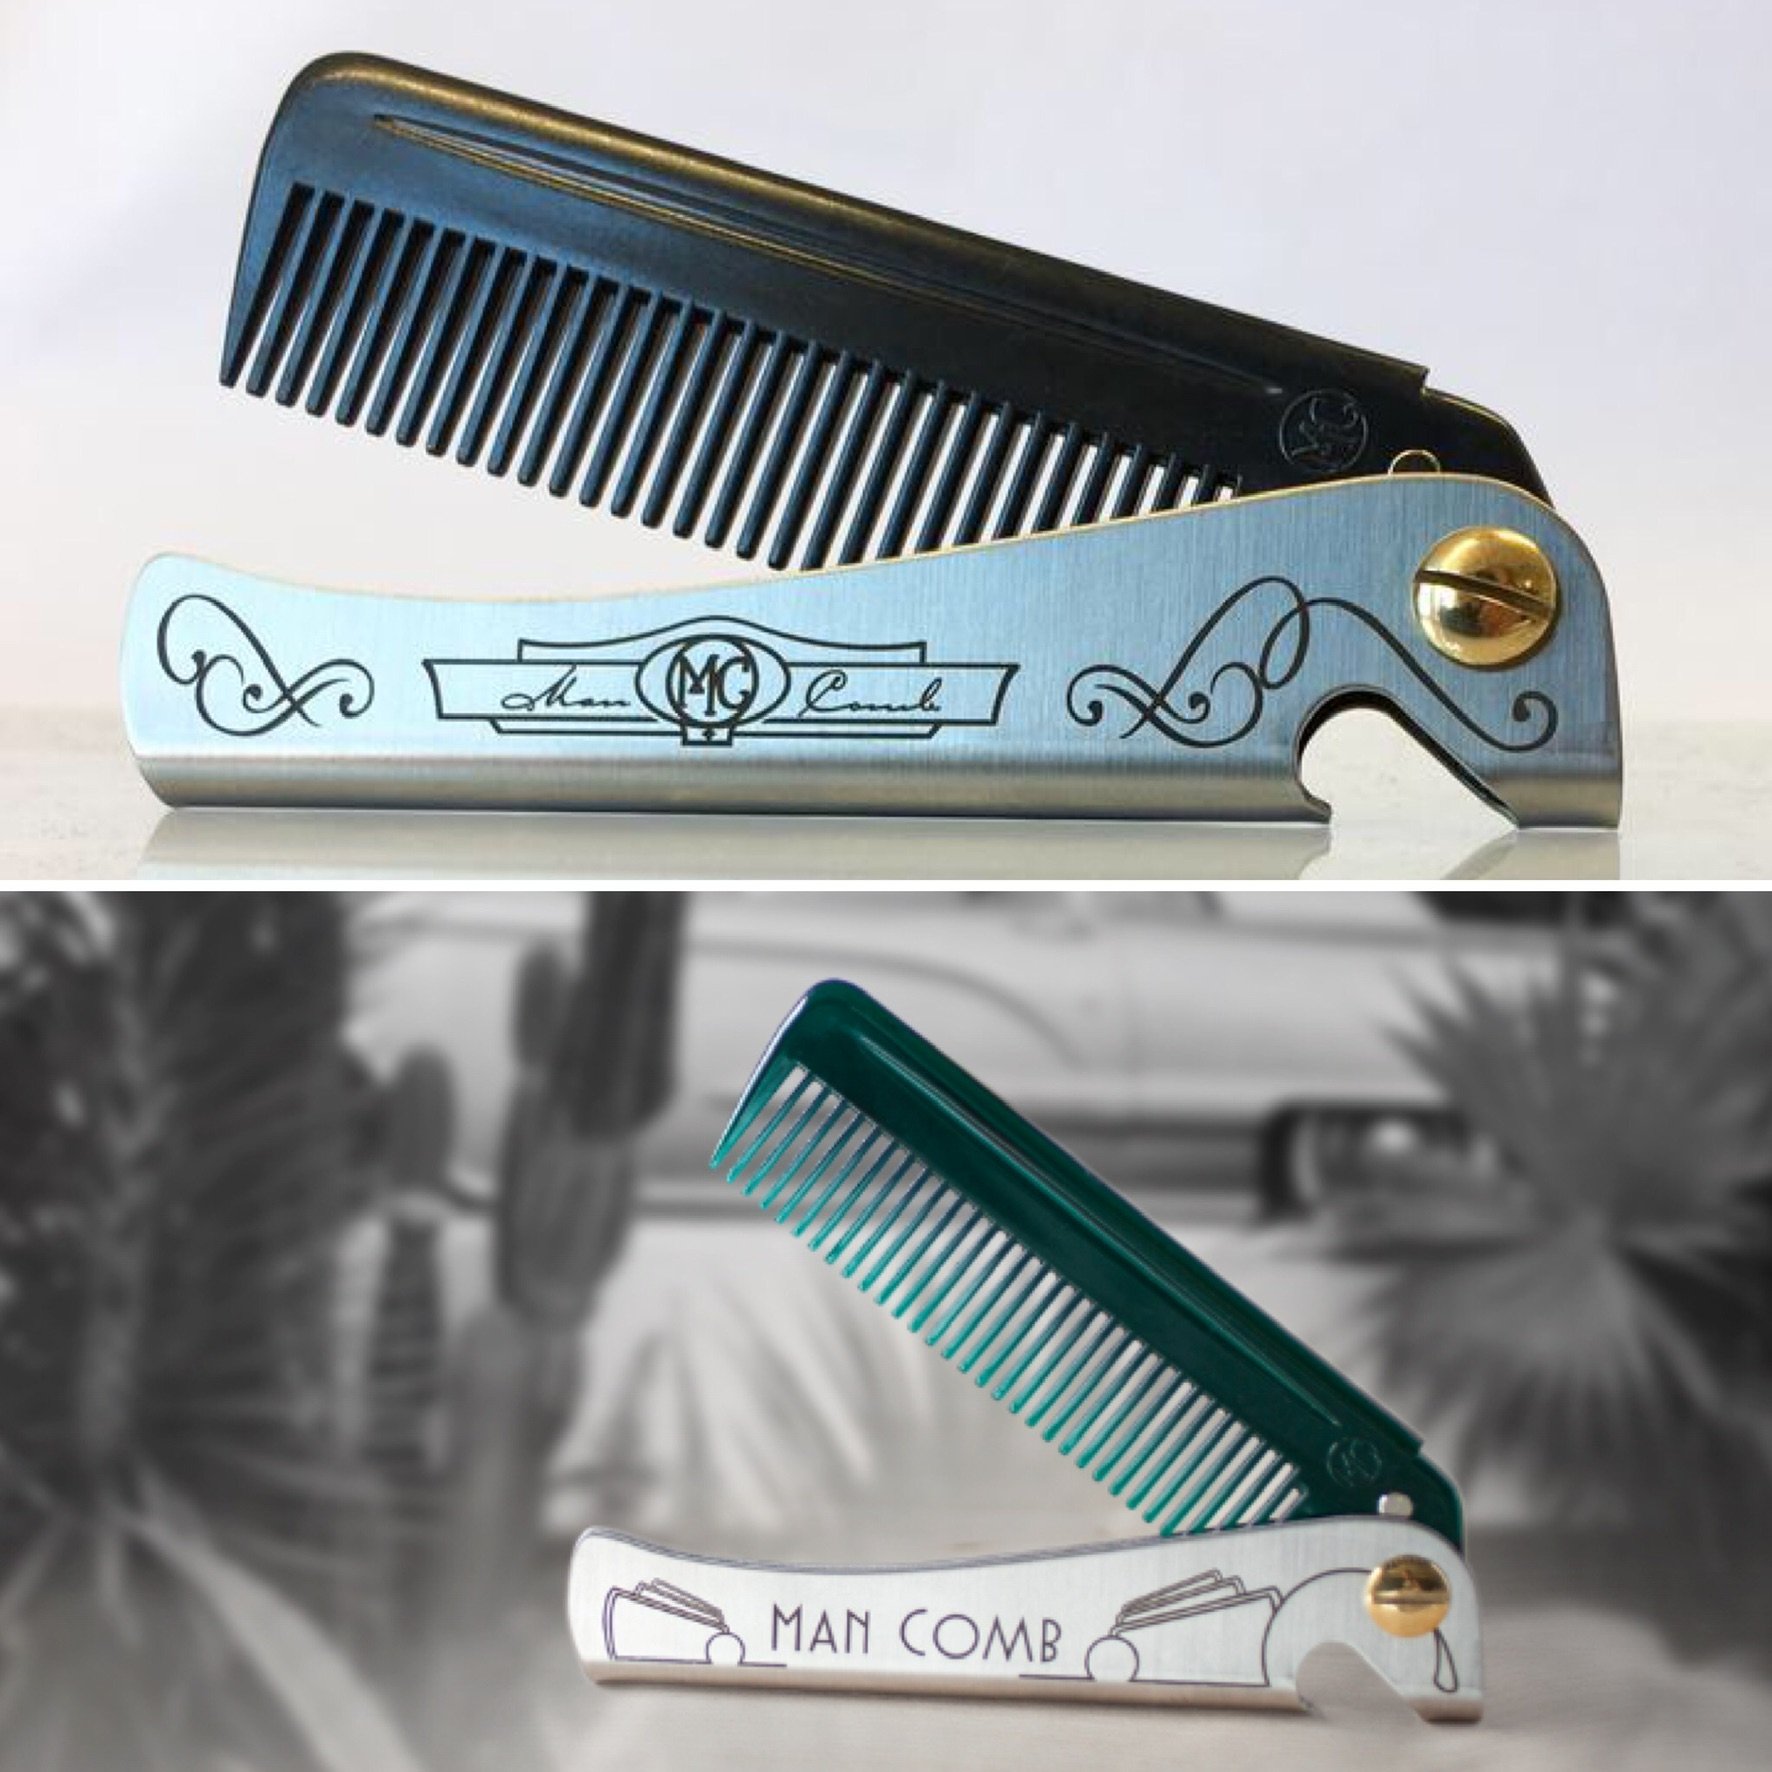 Man comb 